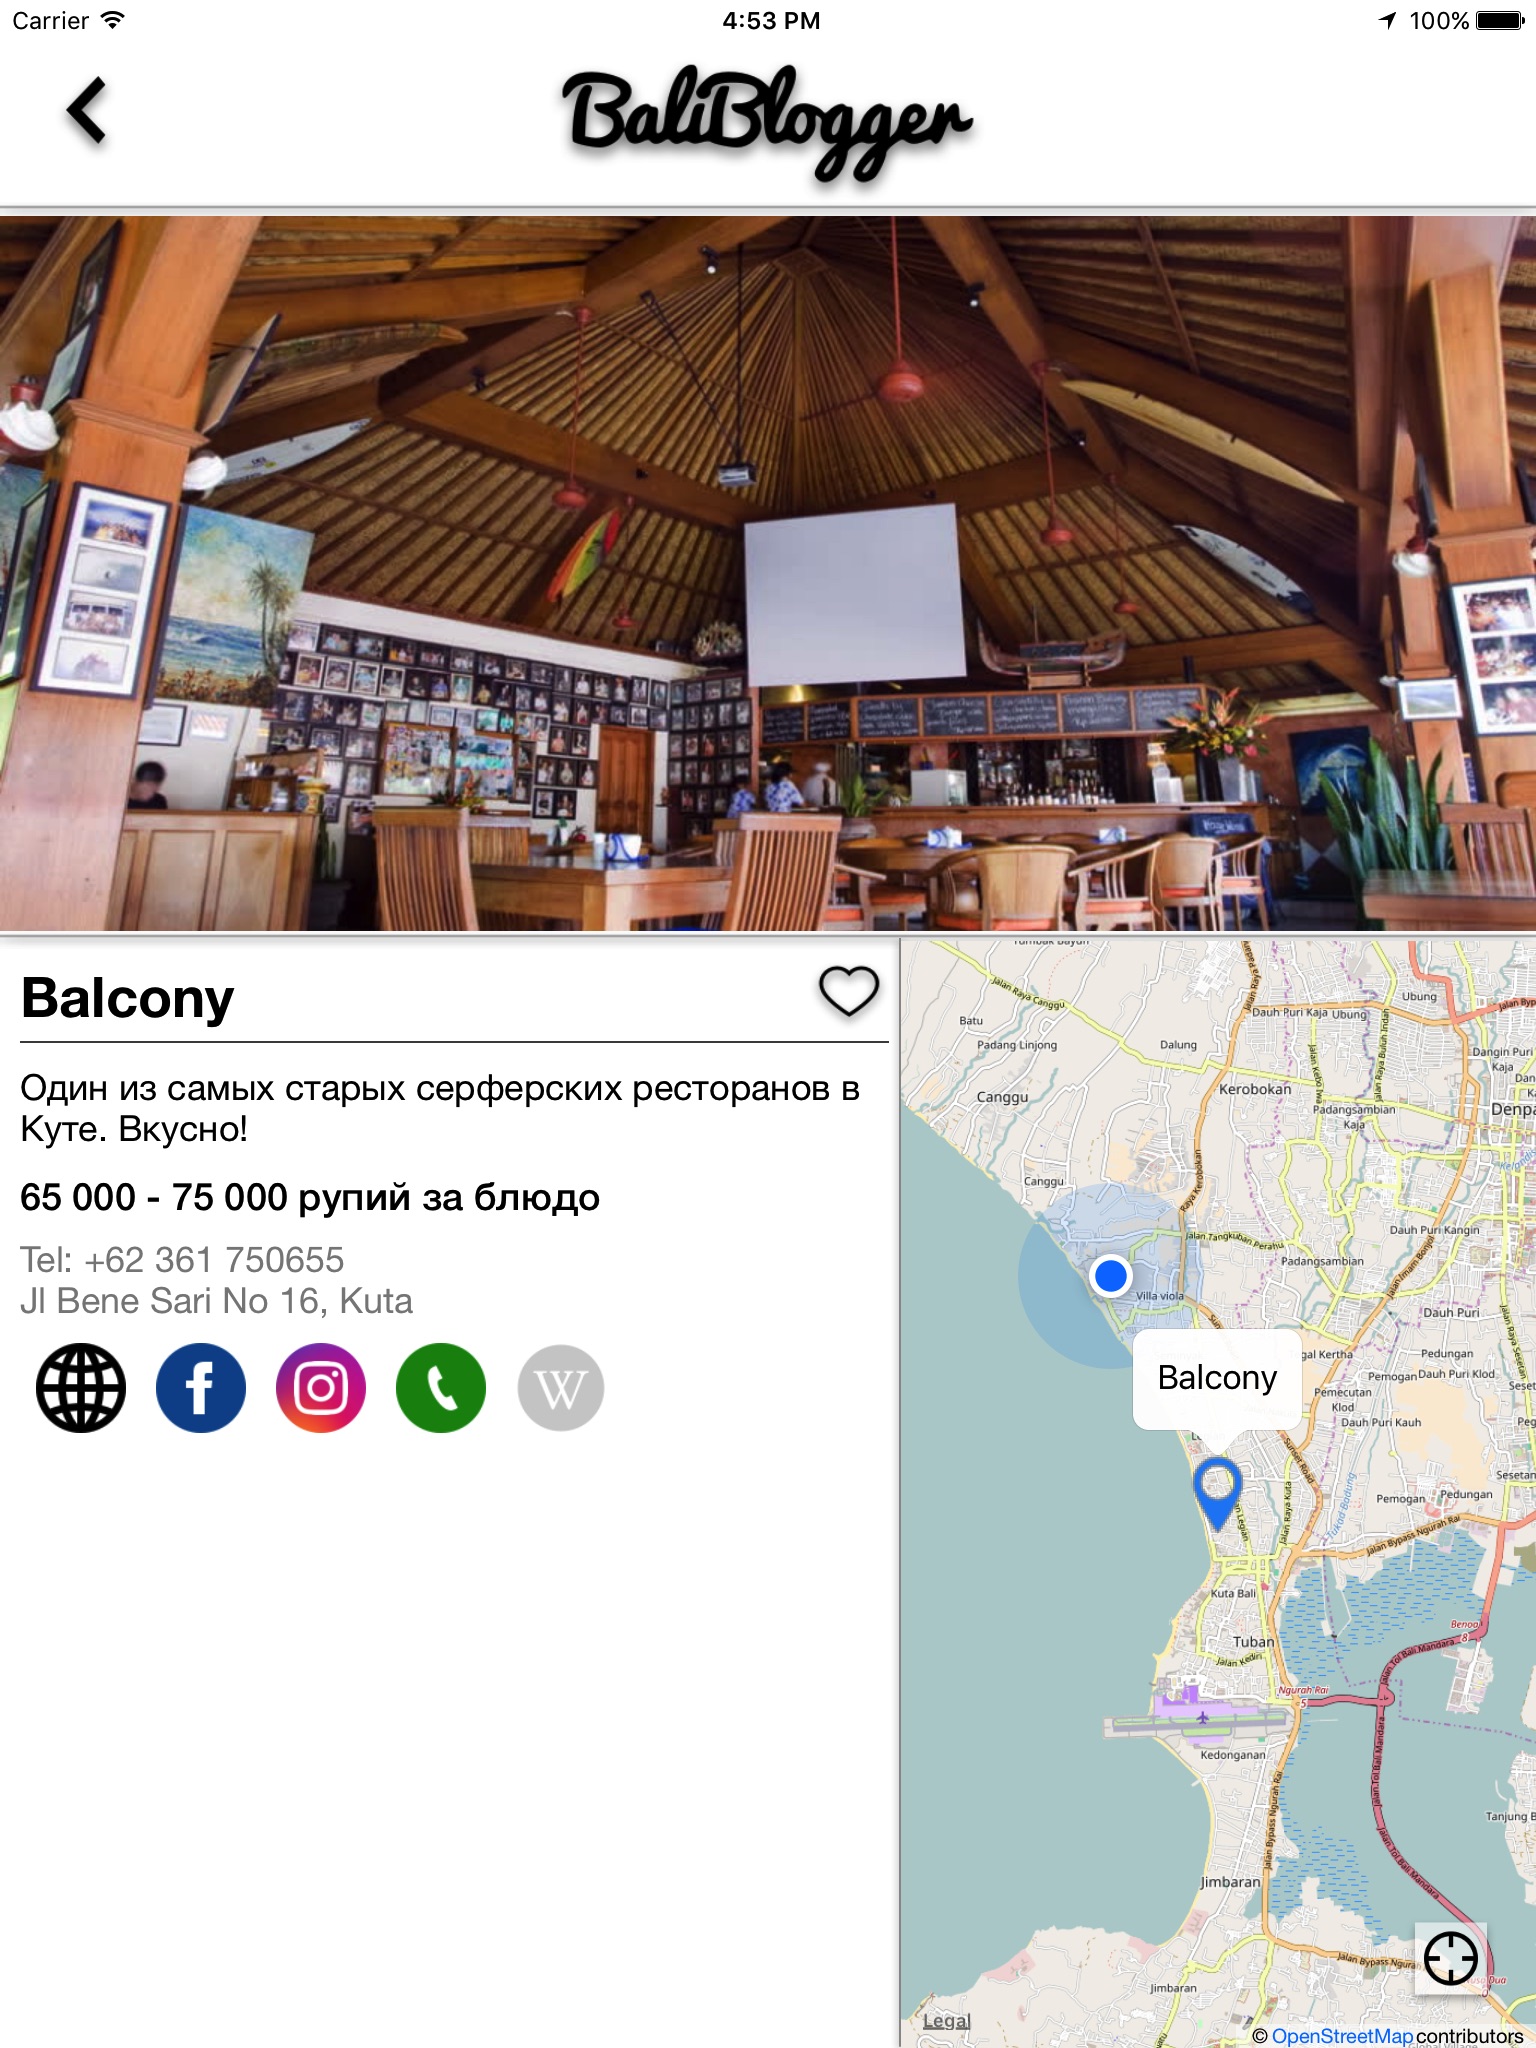 BaliBlogger - твой гид по Бали screenshot 3